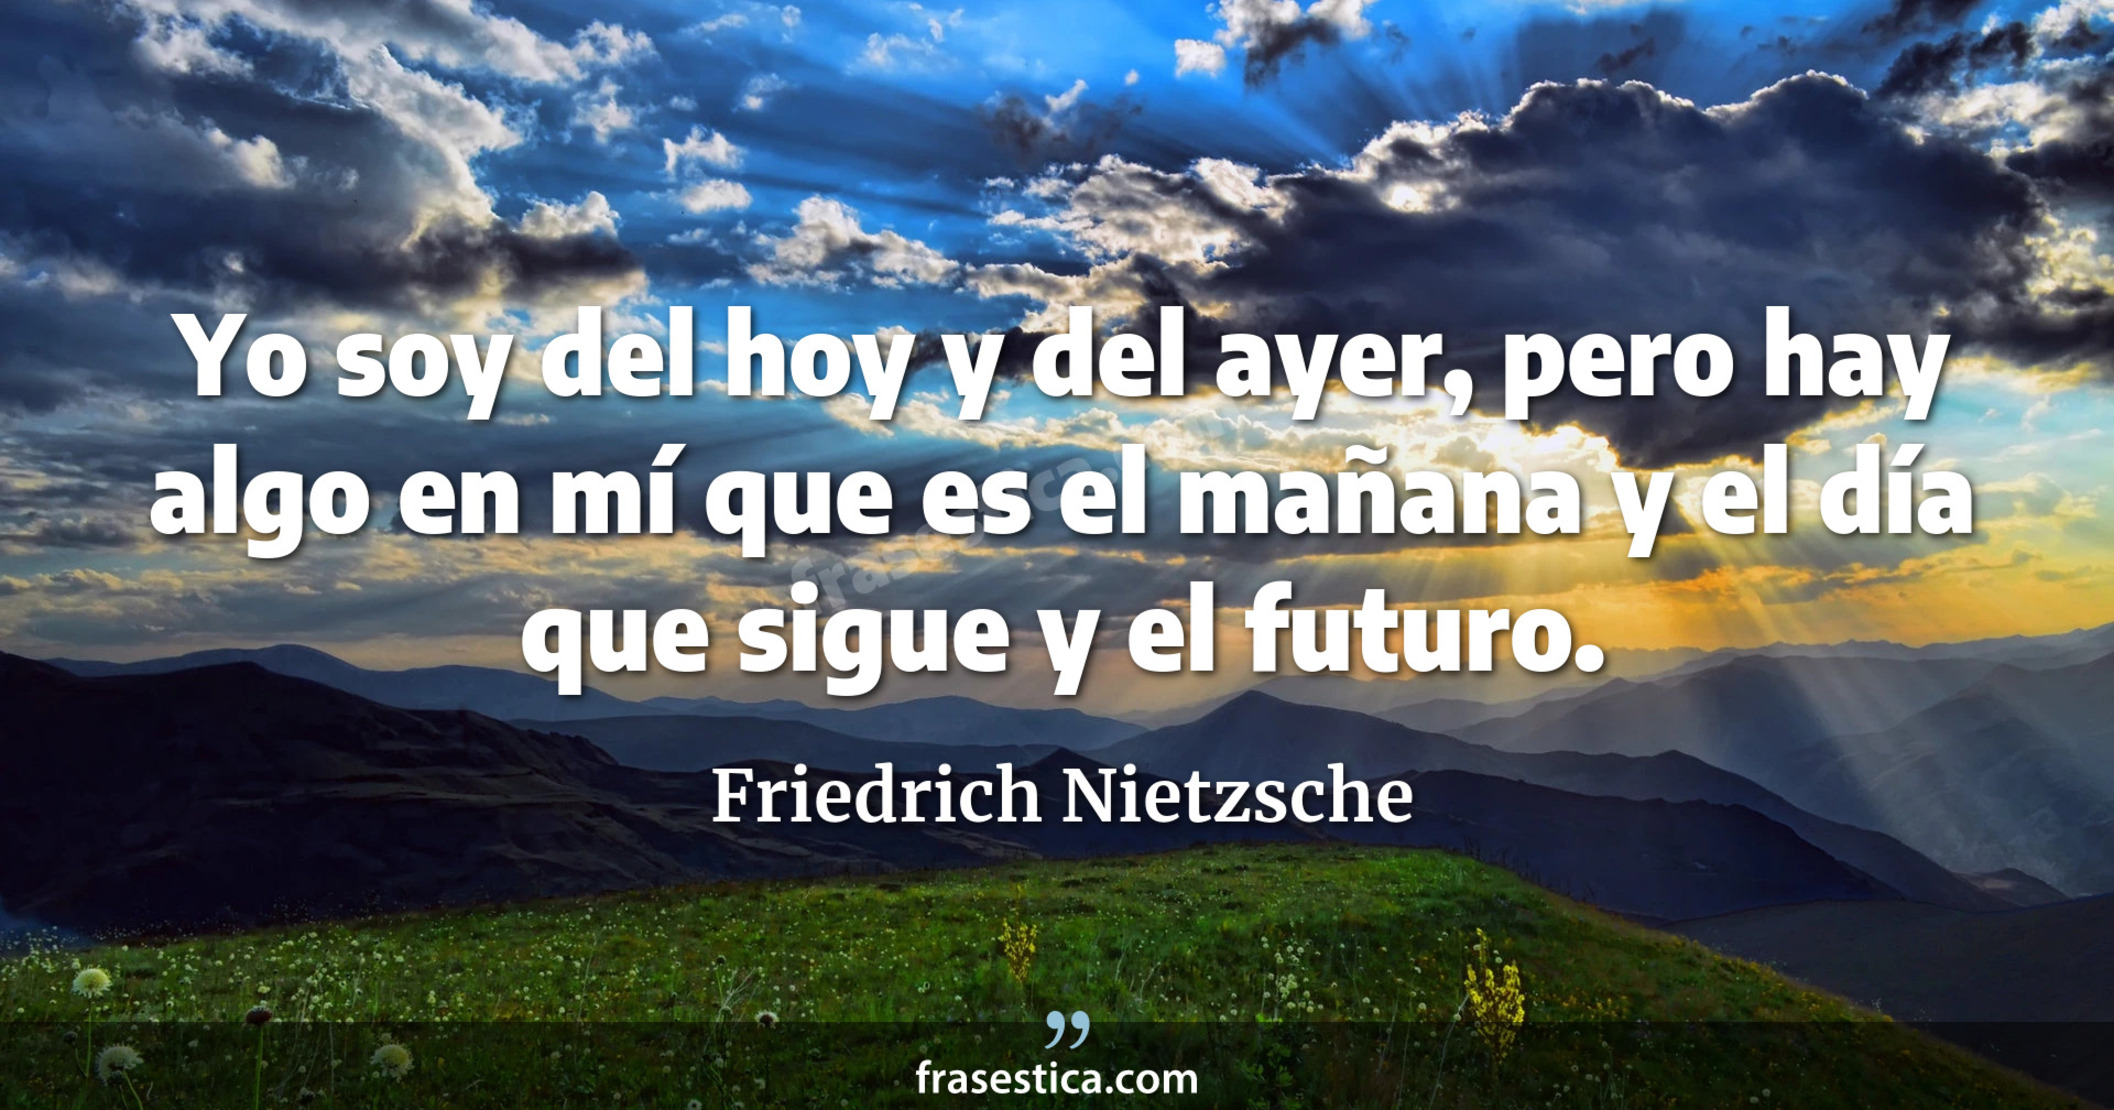 Yo soy del hoy y del ayer, pero hay algo en mí que es el mañana y el día que sigue y el futuro. - Friedrich Nietzsche